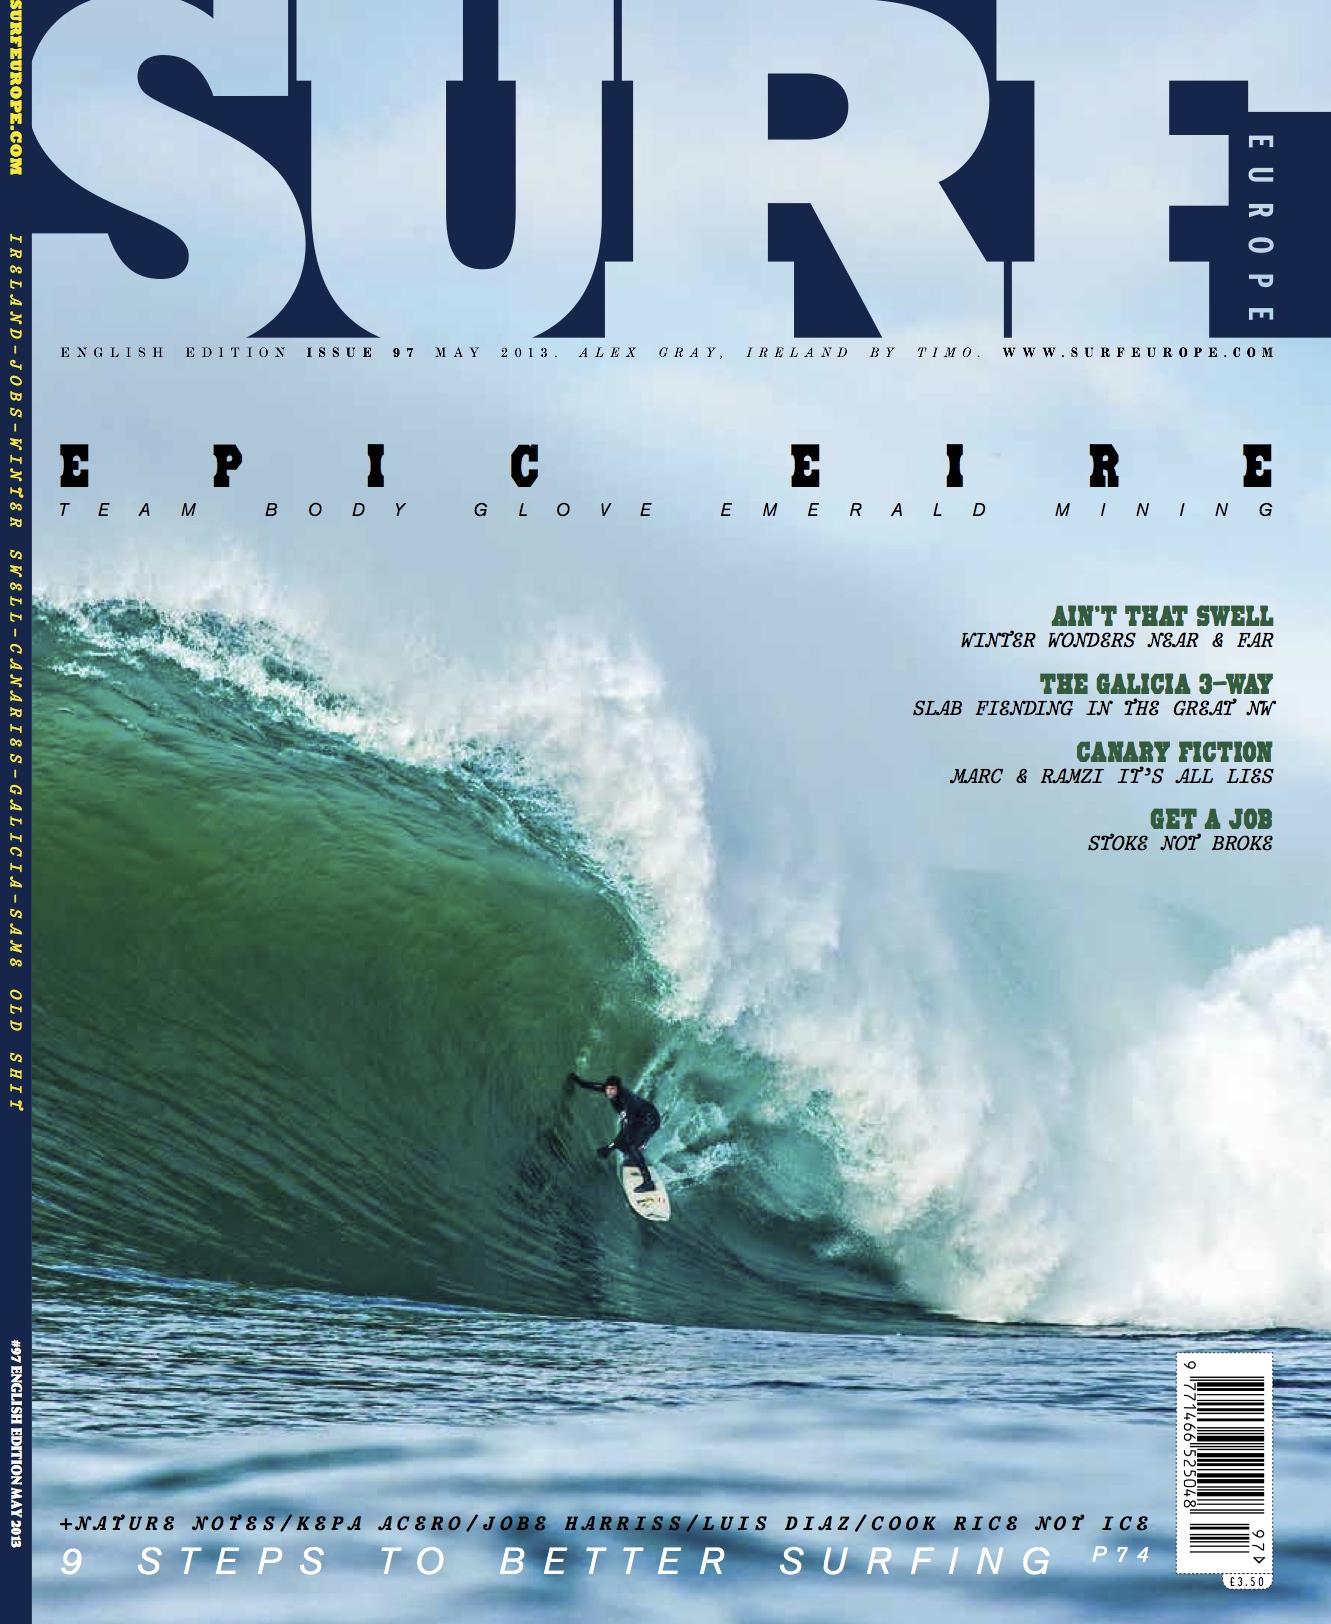 2015 09 15 Surf Europe Magazine 